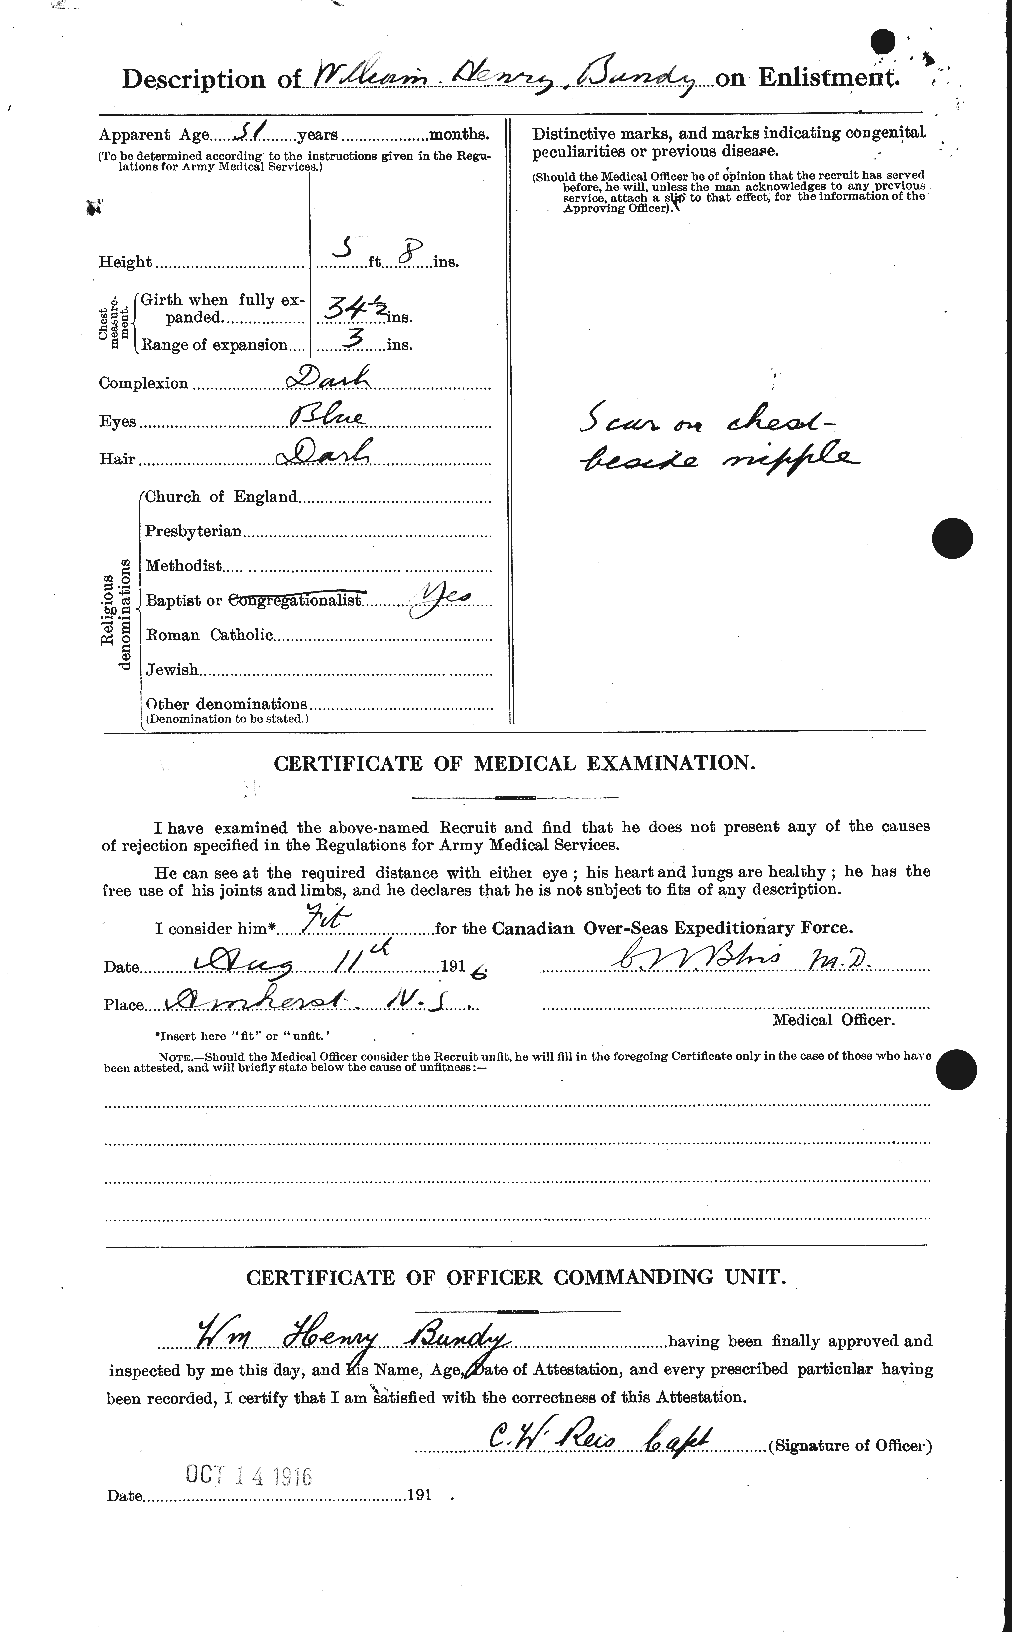 Dossiers du Personnel de la Première Guerre mondiale - CEC 270384b